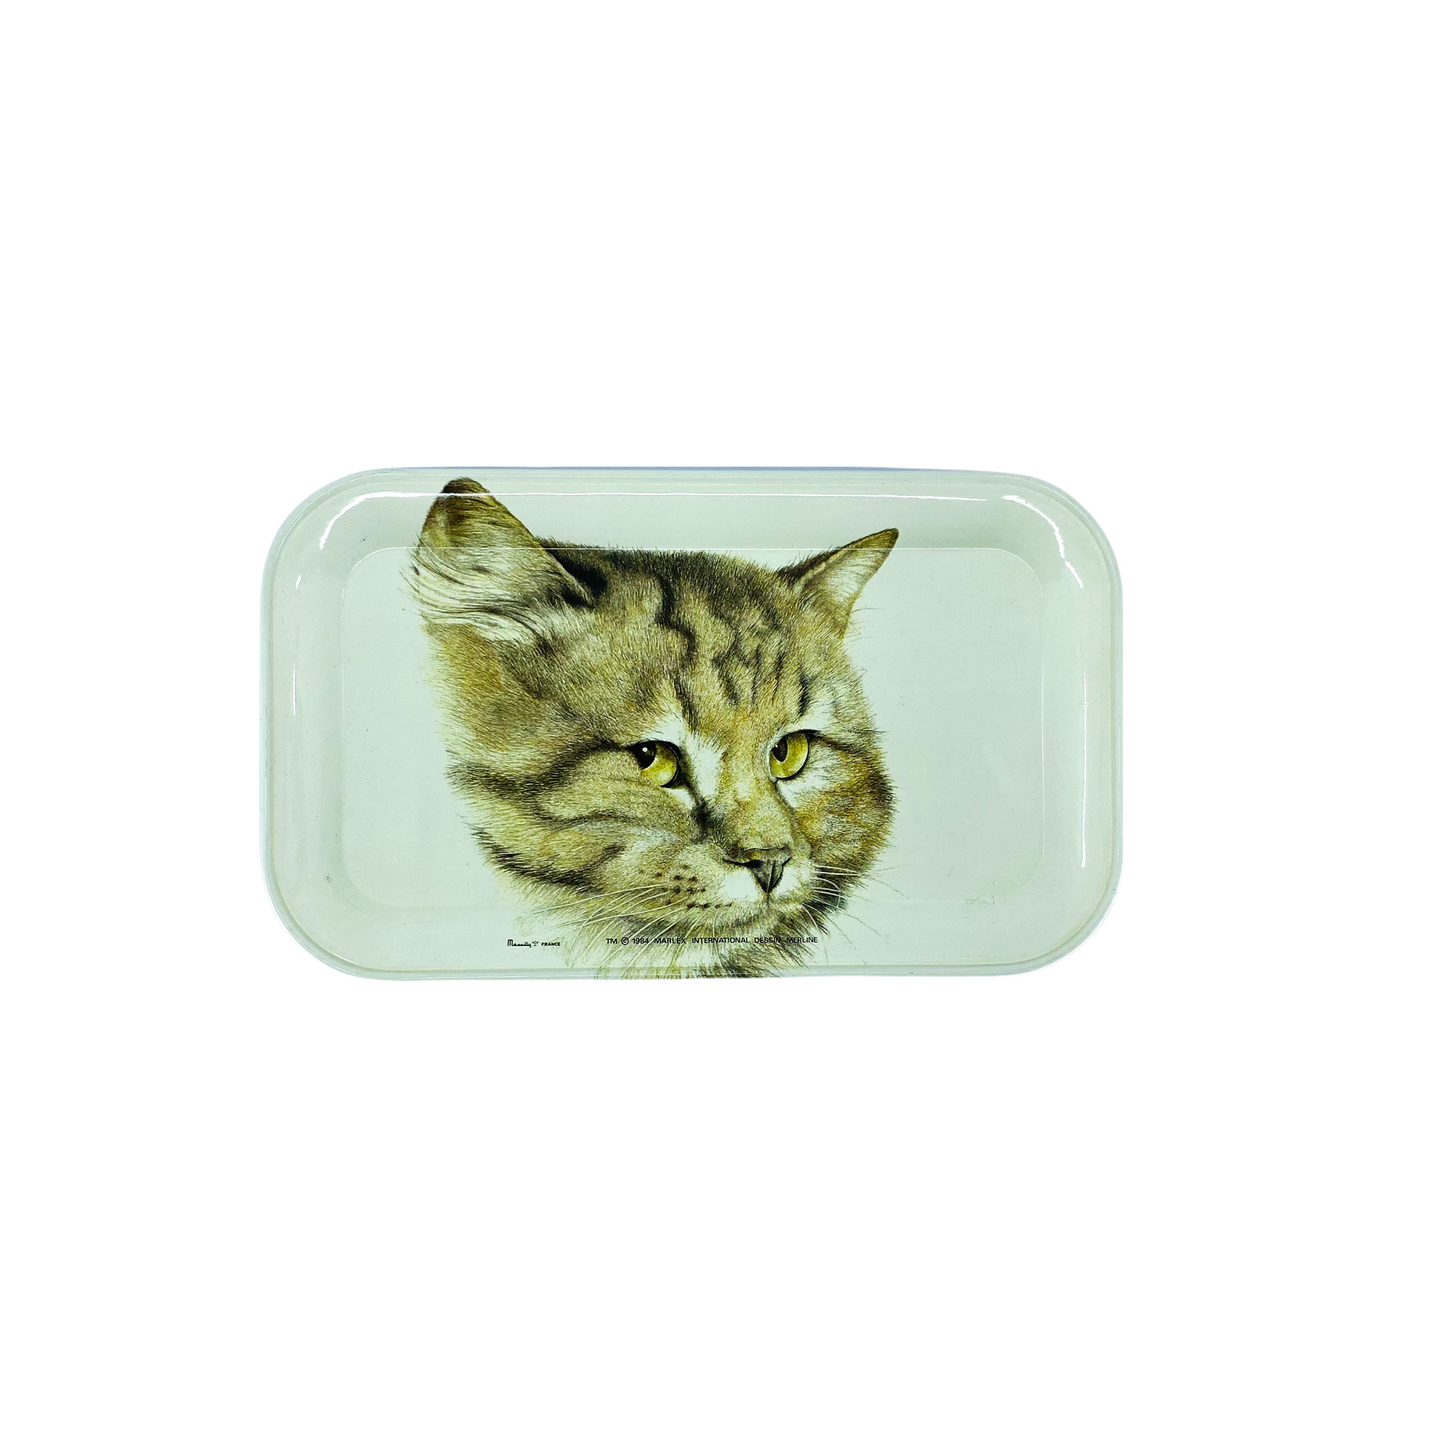 Massilly France Small Tabby Cat Tray